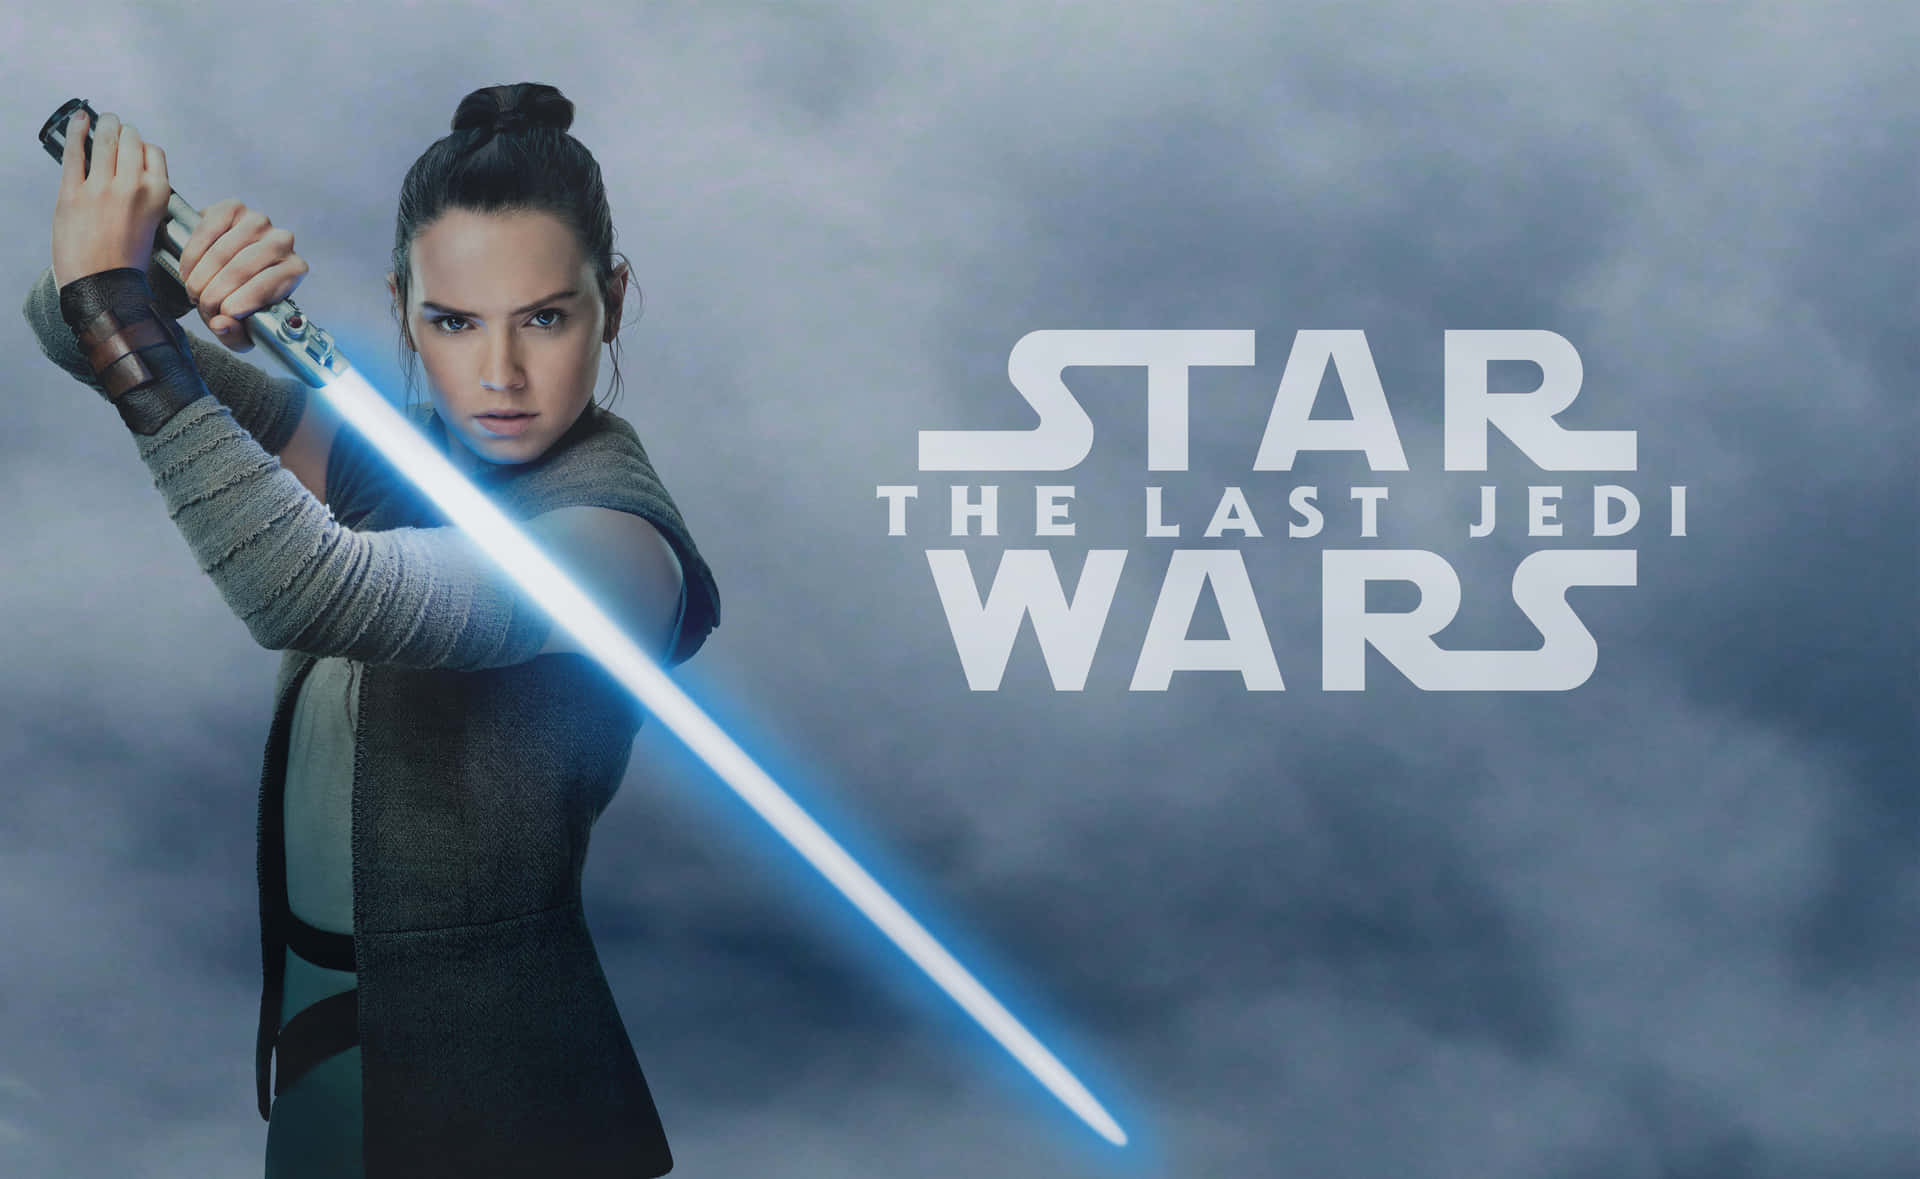 Rey tager et standpunkt mod First Order i en imponerende stjernekrigs karakterer portræt. Wallpaper